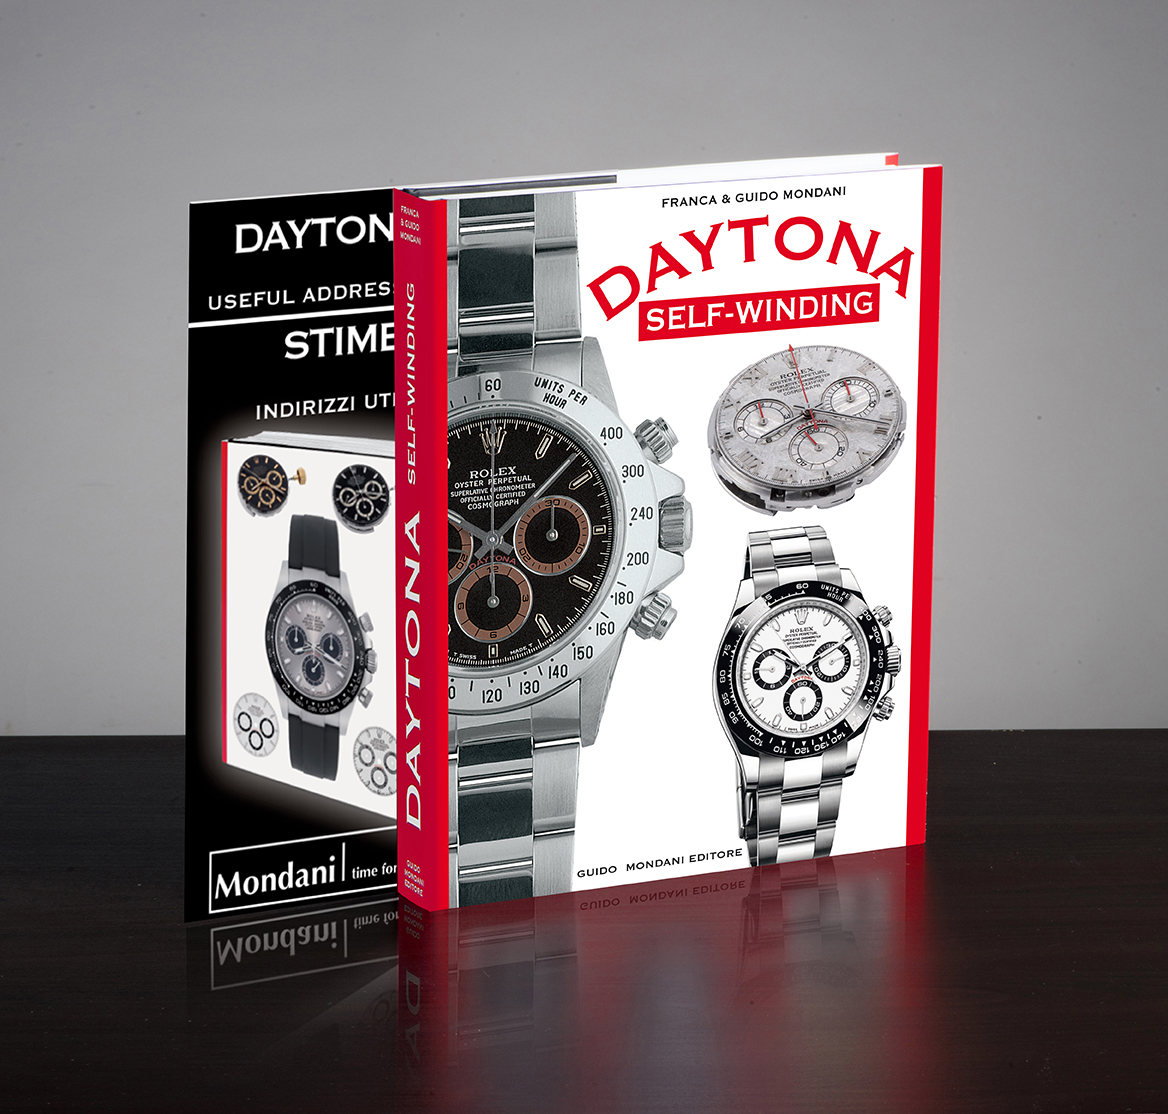 Rolex Daytona Self-Winding - Mondani Books